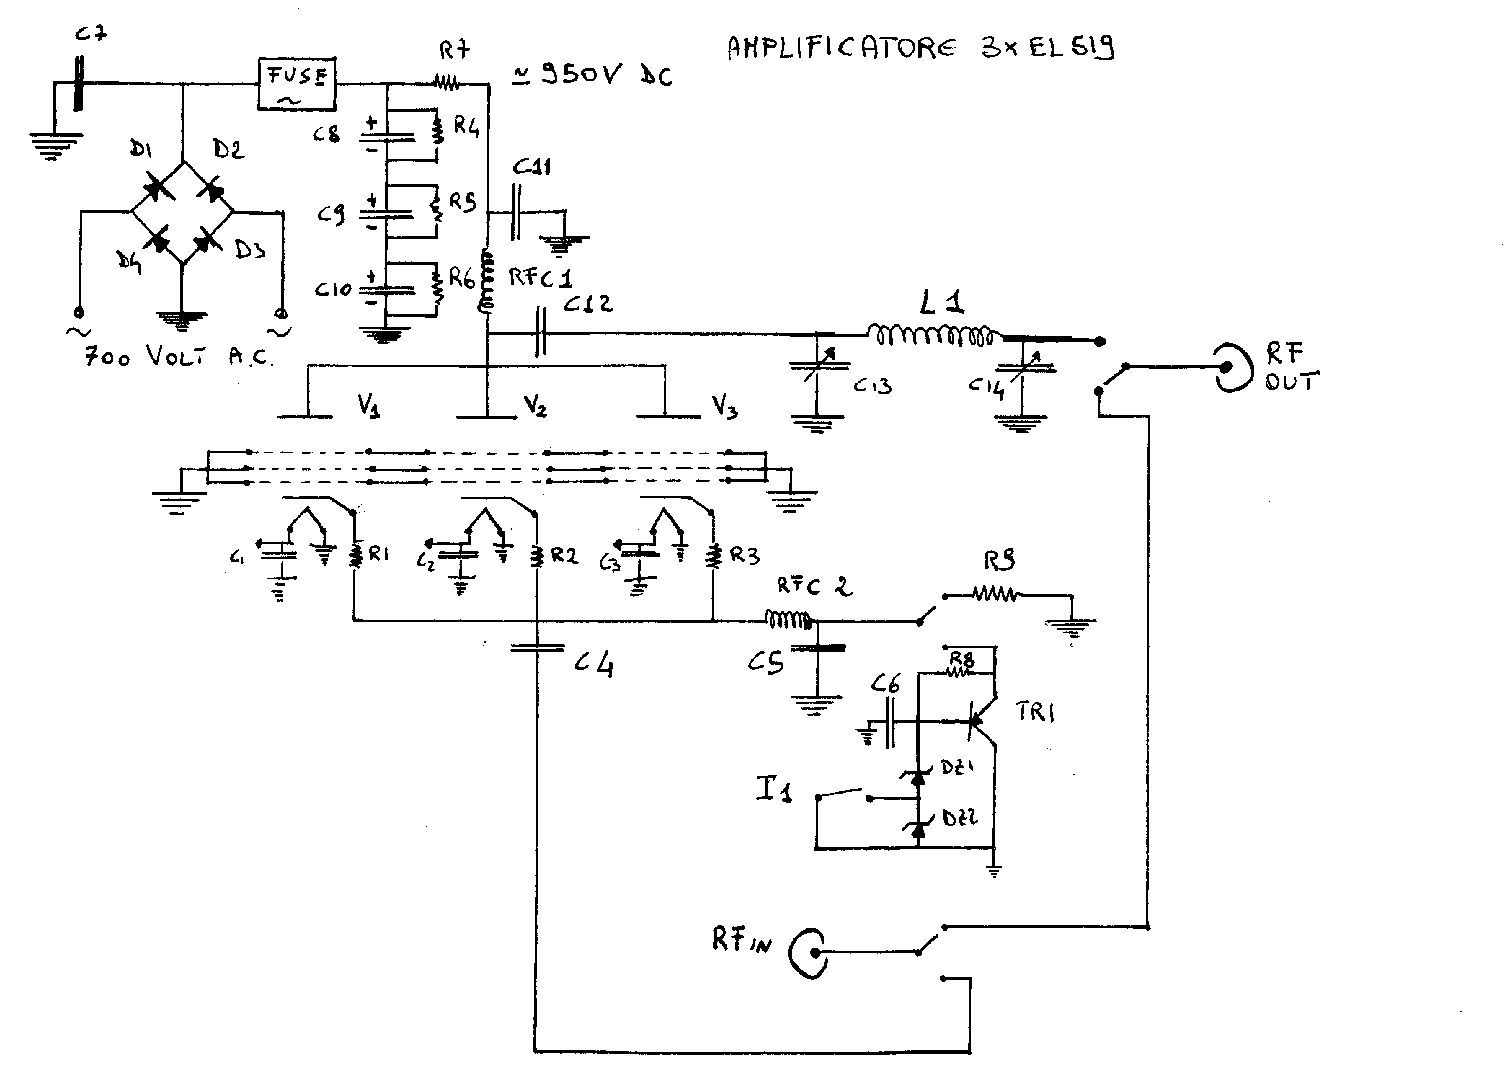 schema elettrico del nuovo amplificatore HF